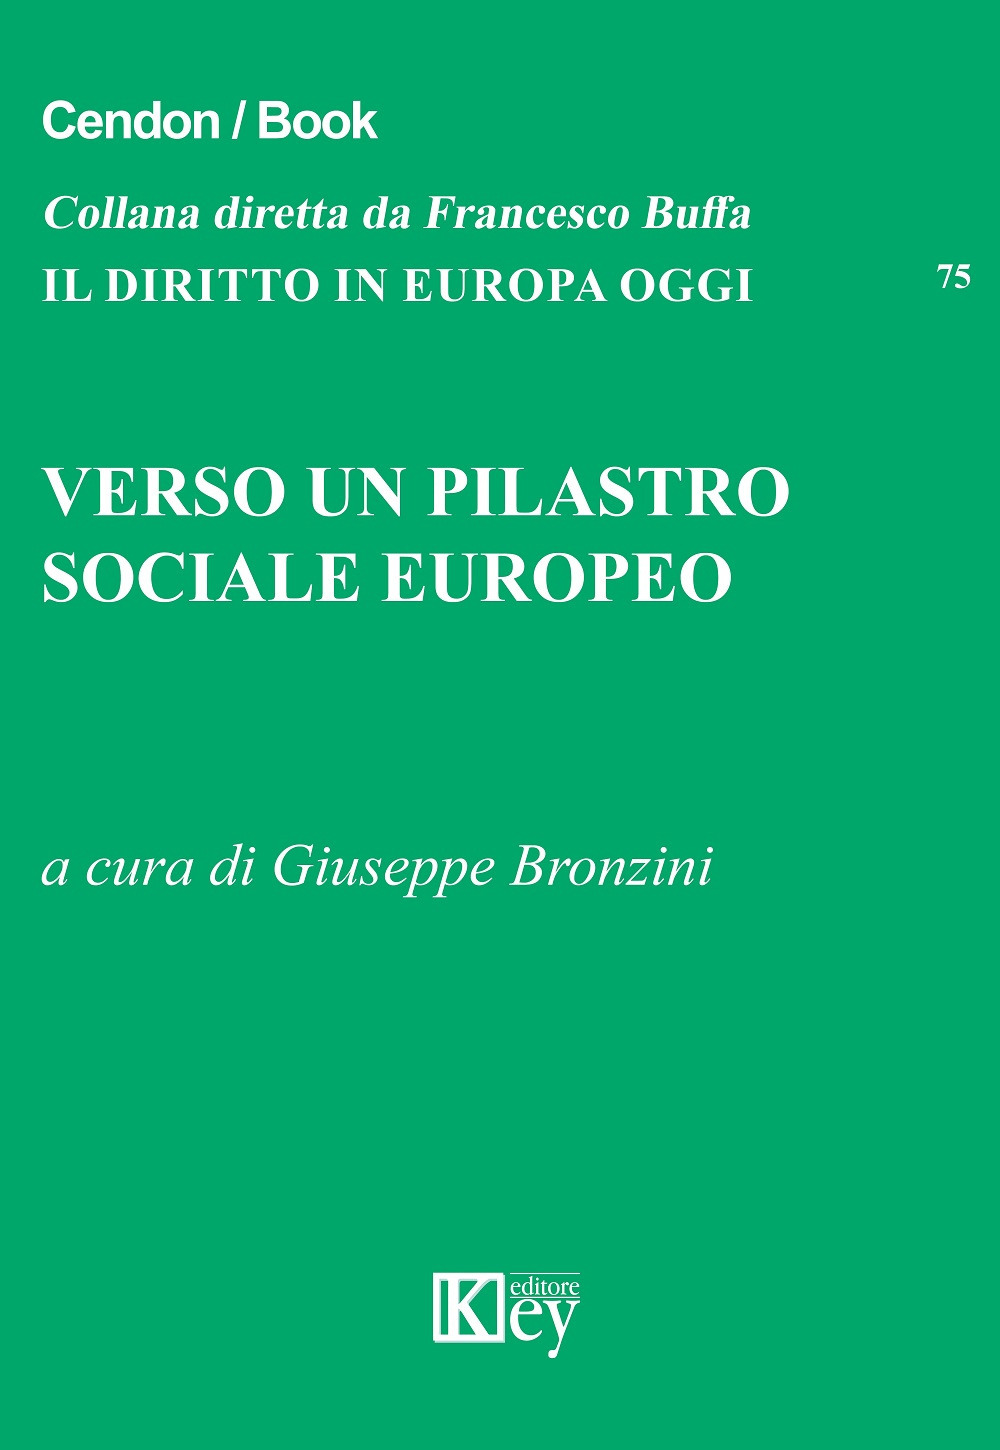 Libri Verso Un Pilastro Sociale Europeo NUOVO SIGILLATO, EDIZIONE DEL 26/03/2019 SUBITO DISPONIBILE